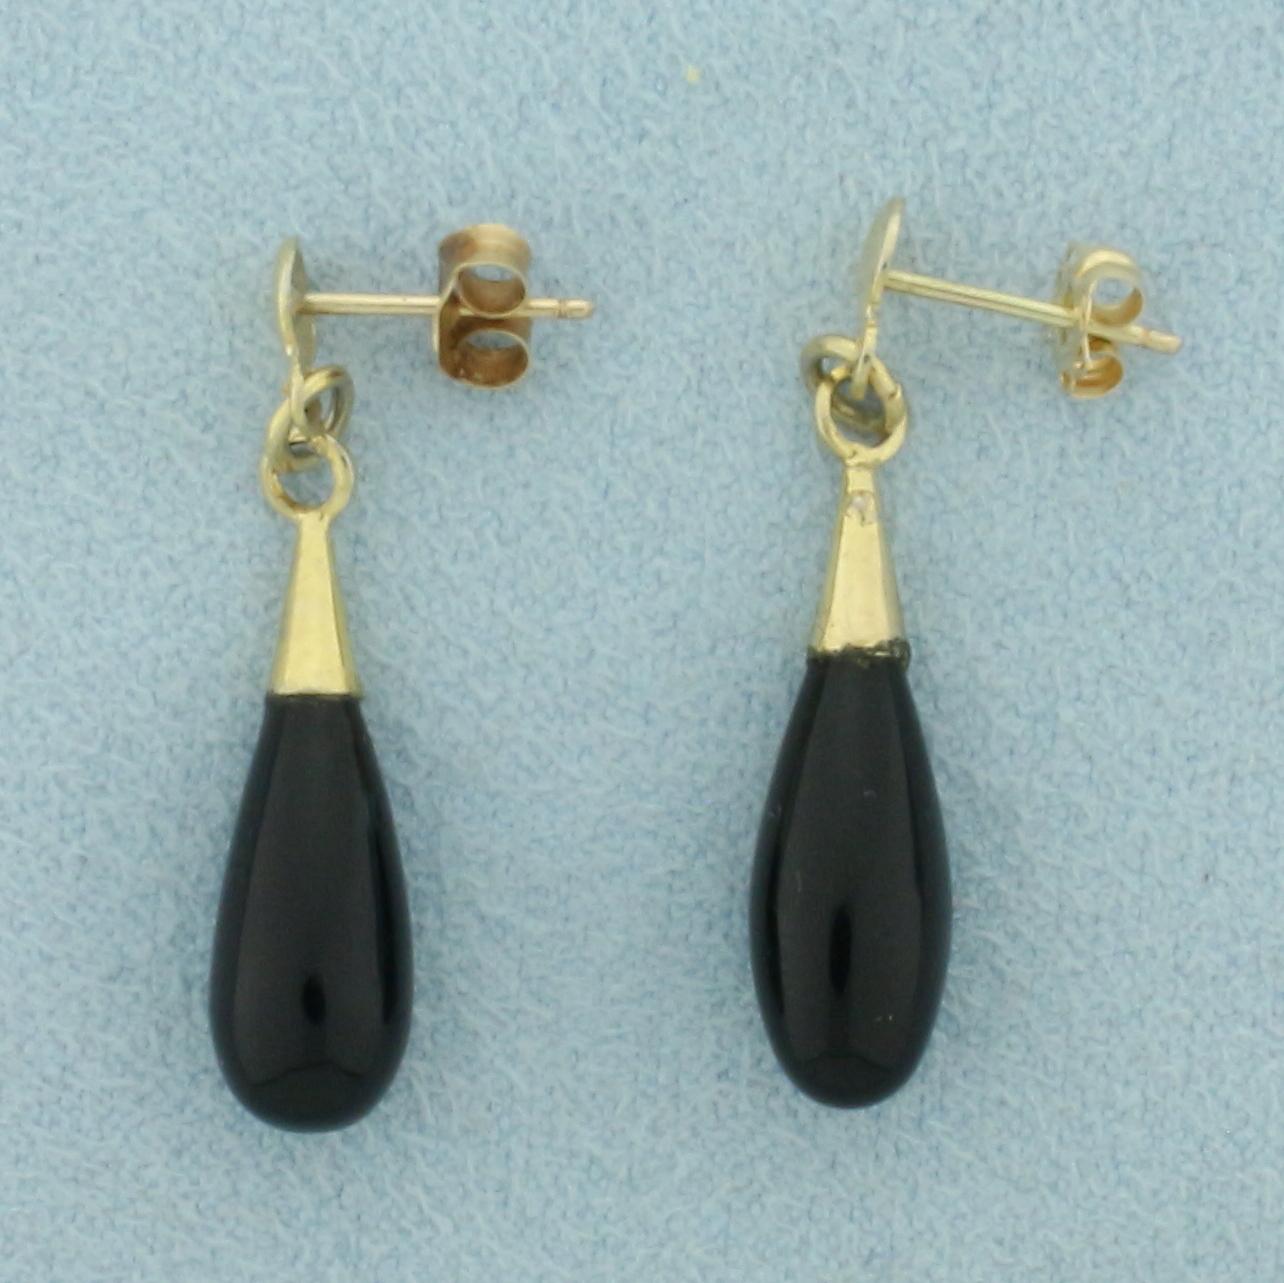 Onyx Teardrop Dangle Earrings In 14k Yellow Gold